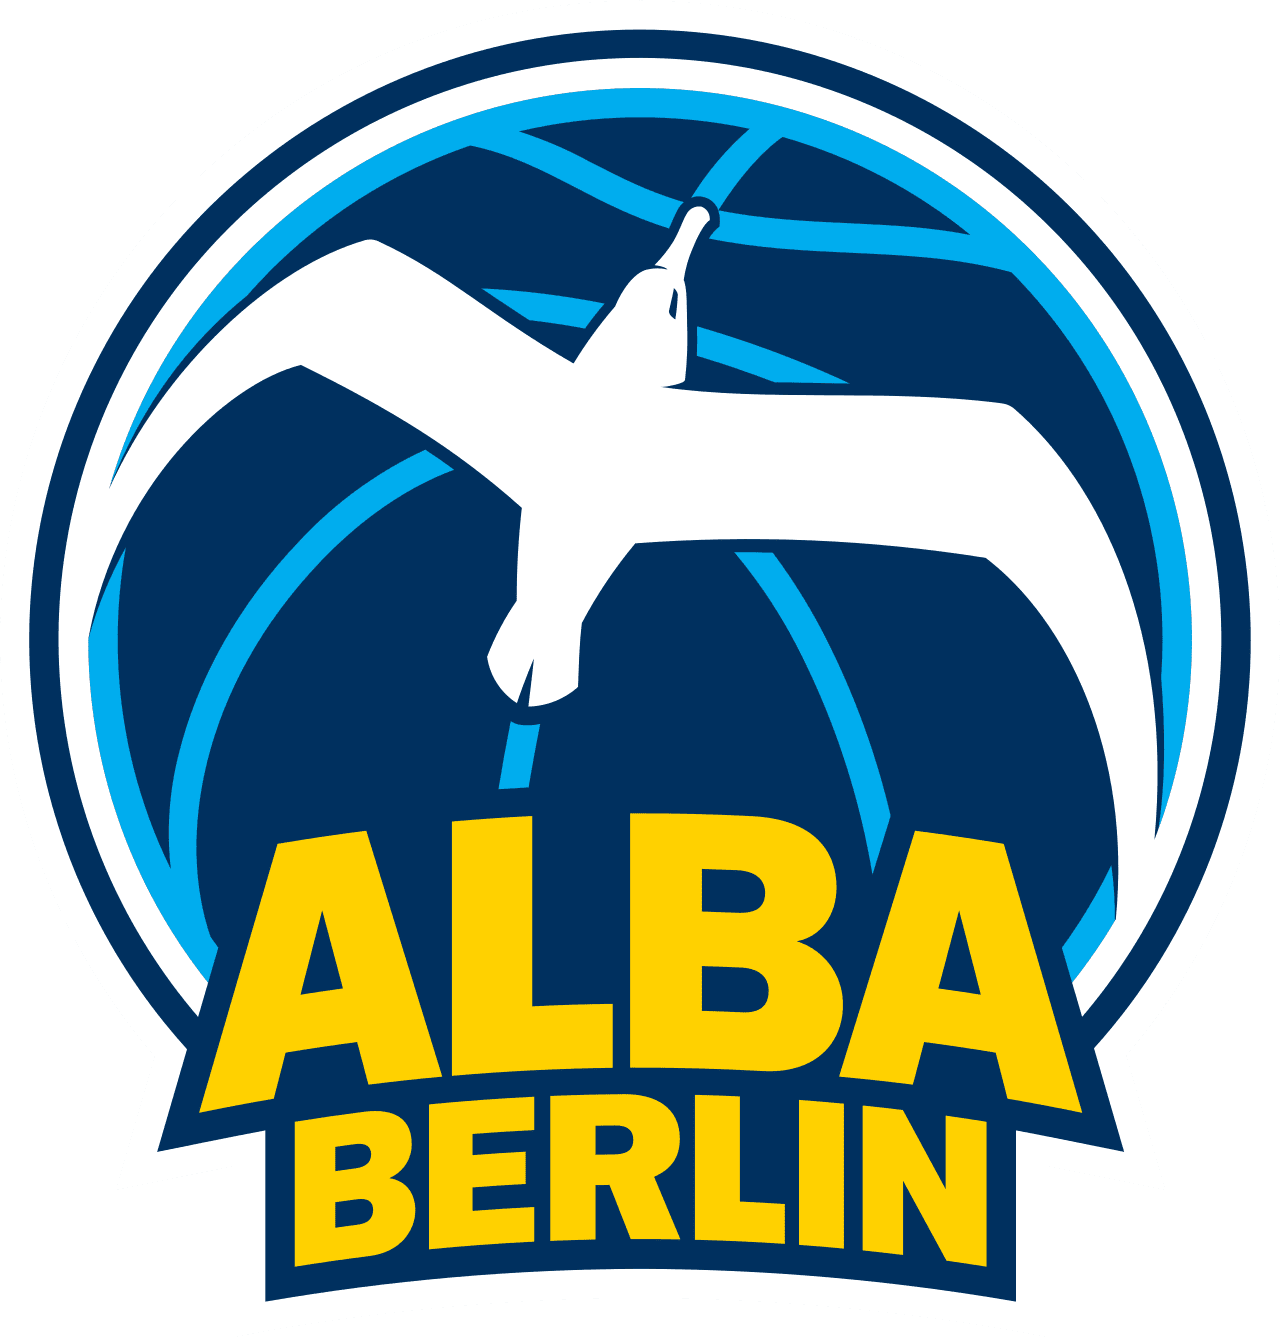 Alba Berlin + logo